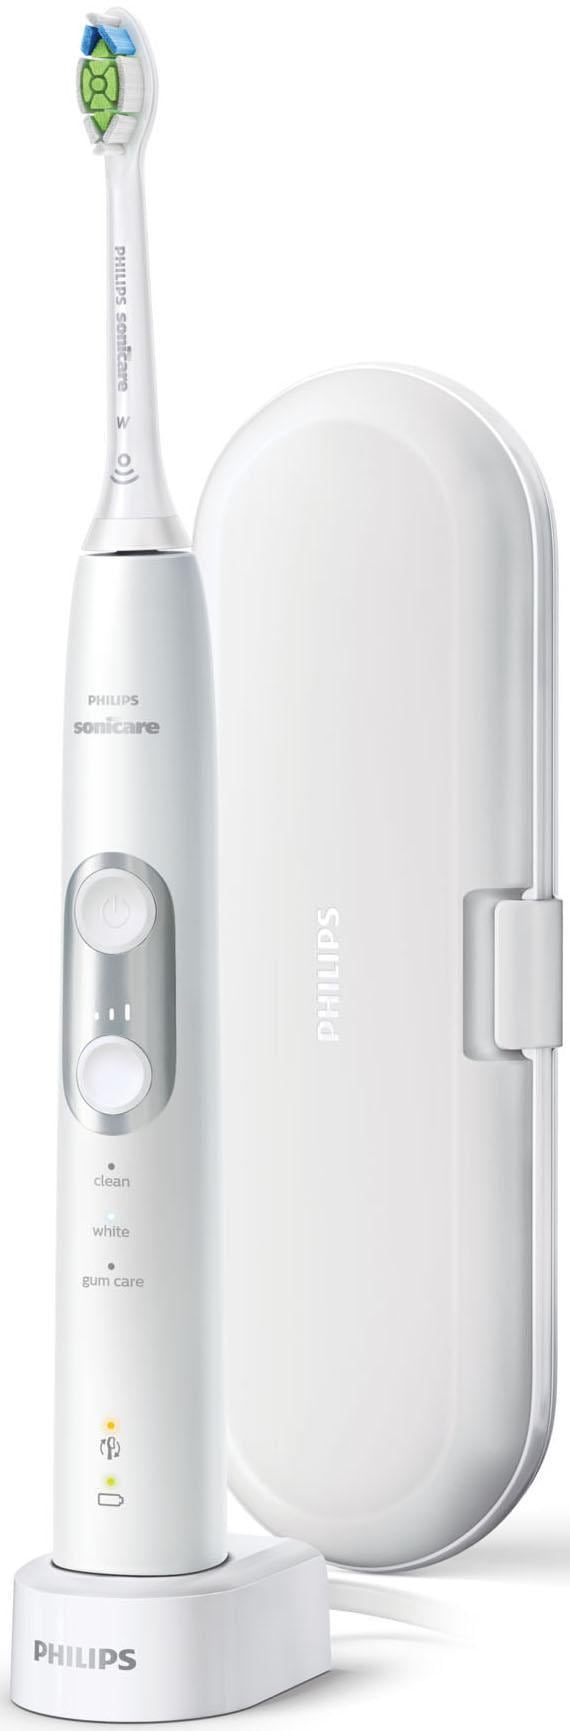 Philips Sonicare Elektrische mit 3 ProtectiveClean 3 »HX6877/28«, Zahnbürste Putzprogrammen St. 6100, Jahren 1 mit Garantie XXL Aufsteckbürsten, Schallzahnbürste